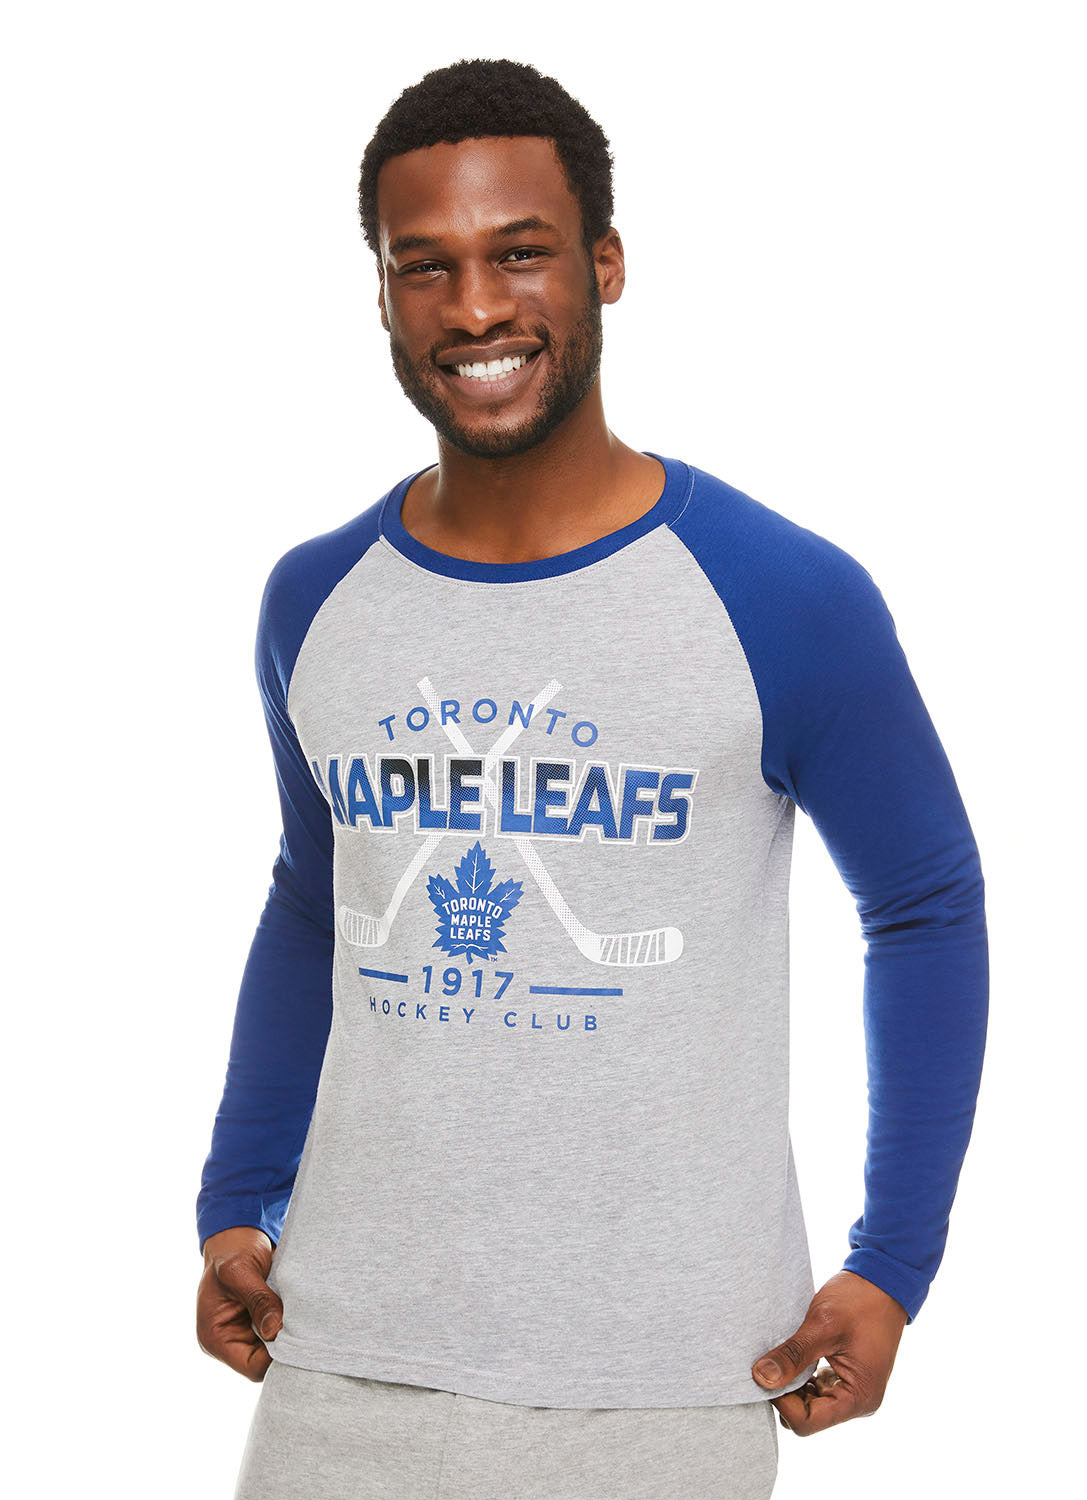 Men's Toronto Maple Leafs Gear, Men's Maple Leafs Apparel, Guys